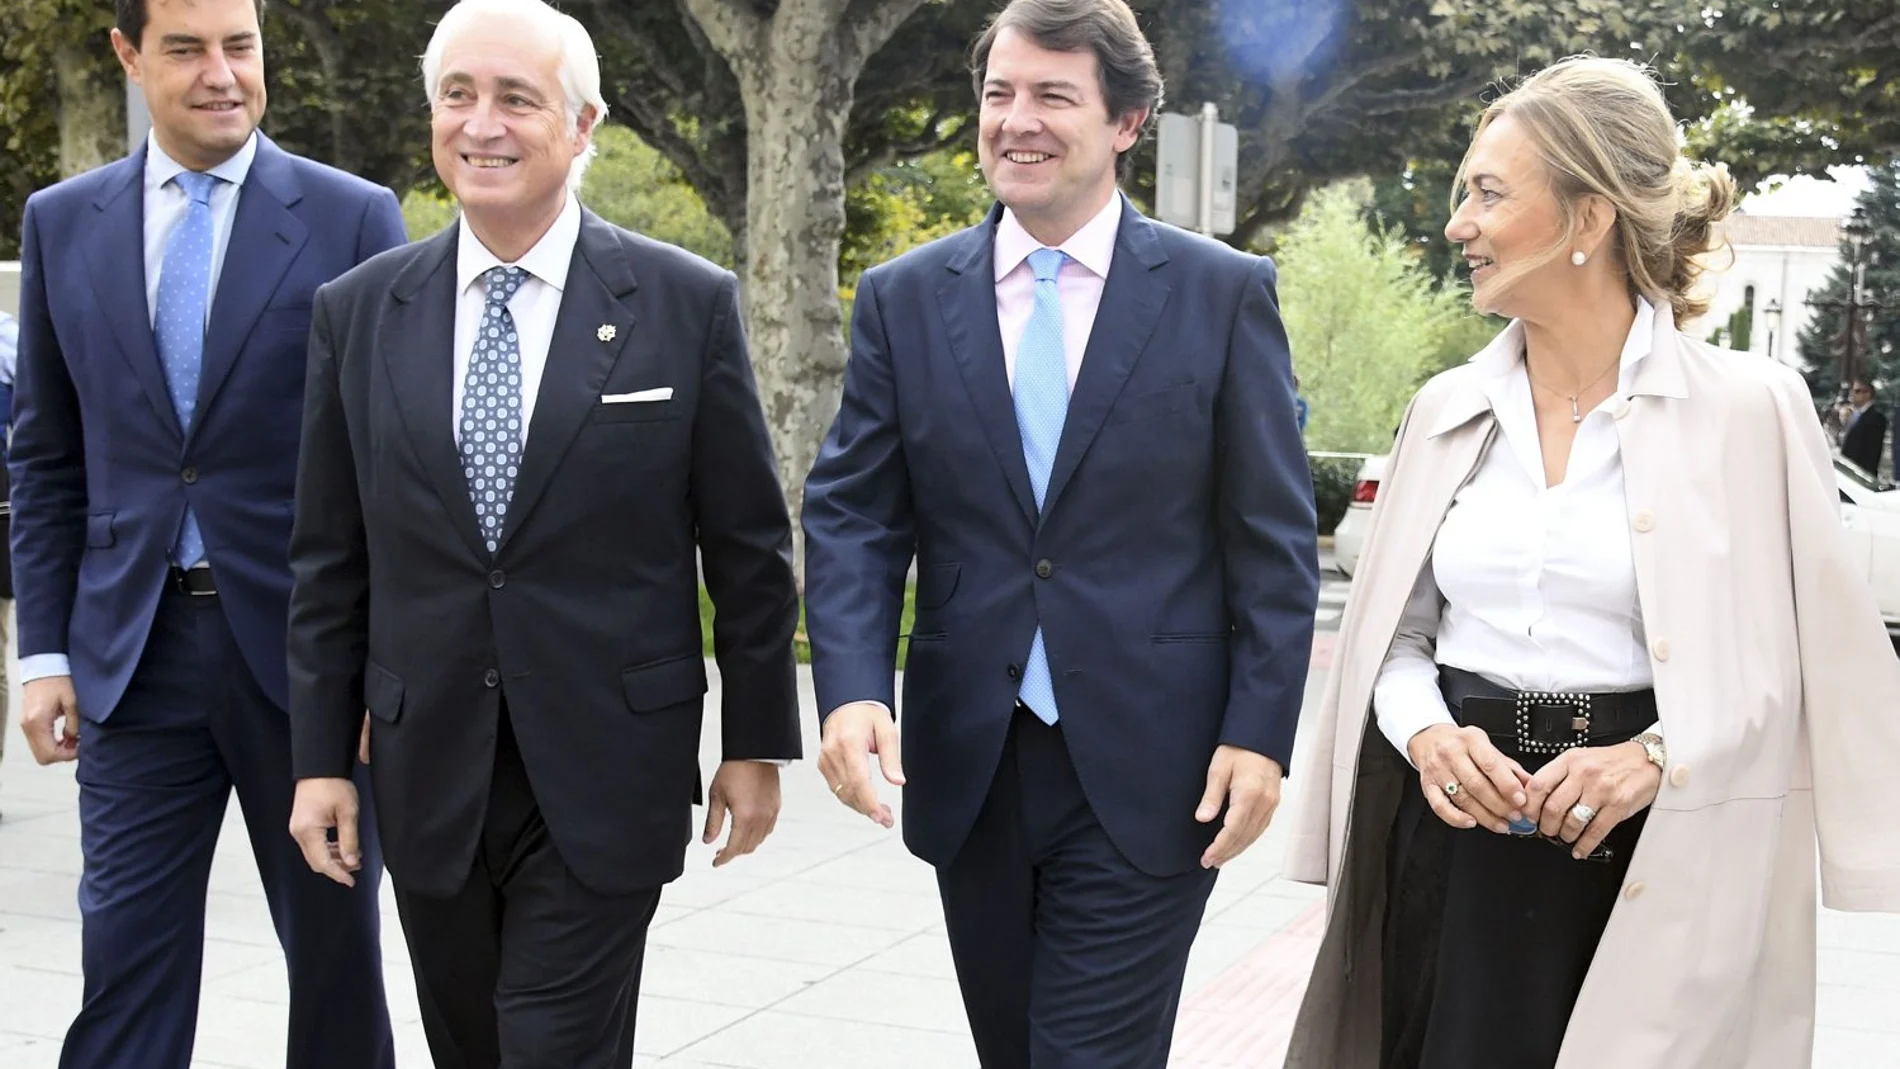 José Luis Concepción y la fiscal Lourdes Rodríguez reciben al presidente de Castilla y León, Alfonso Fernández Mañueco; y al consejero Ángel Ibáñez